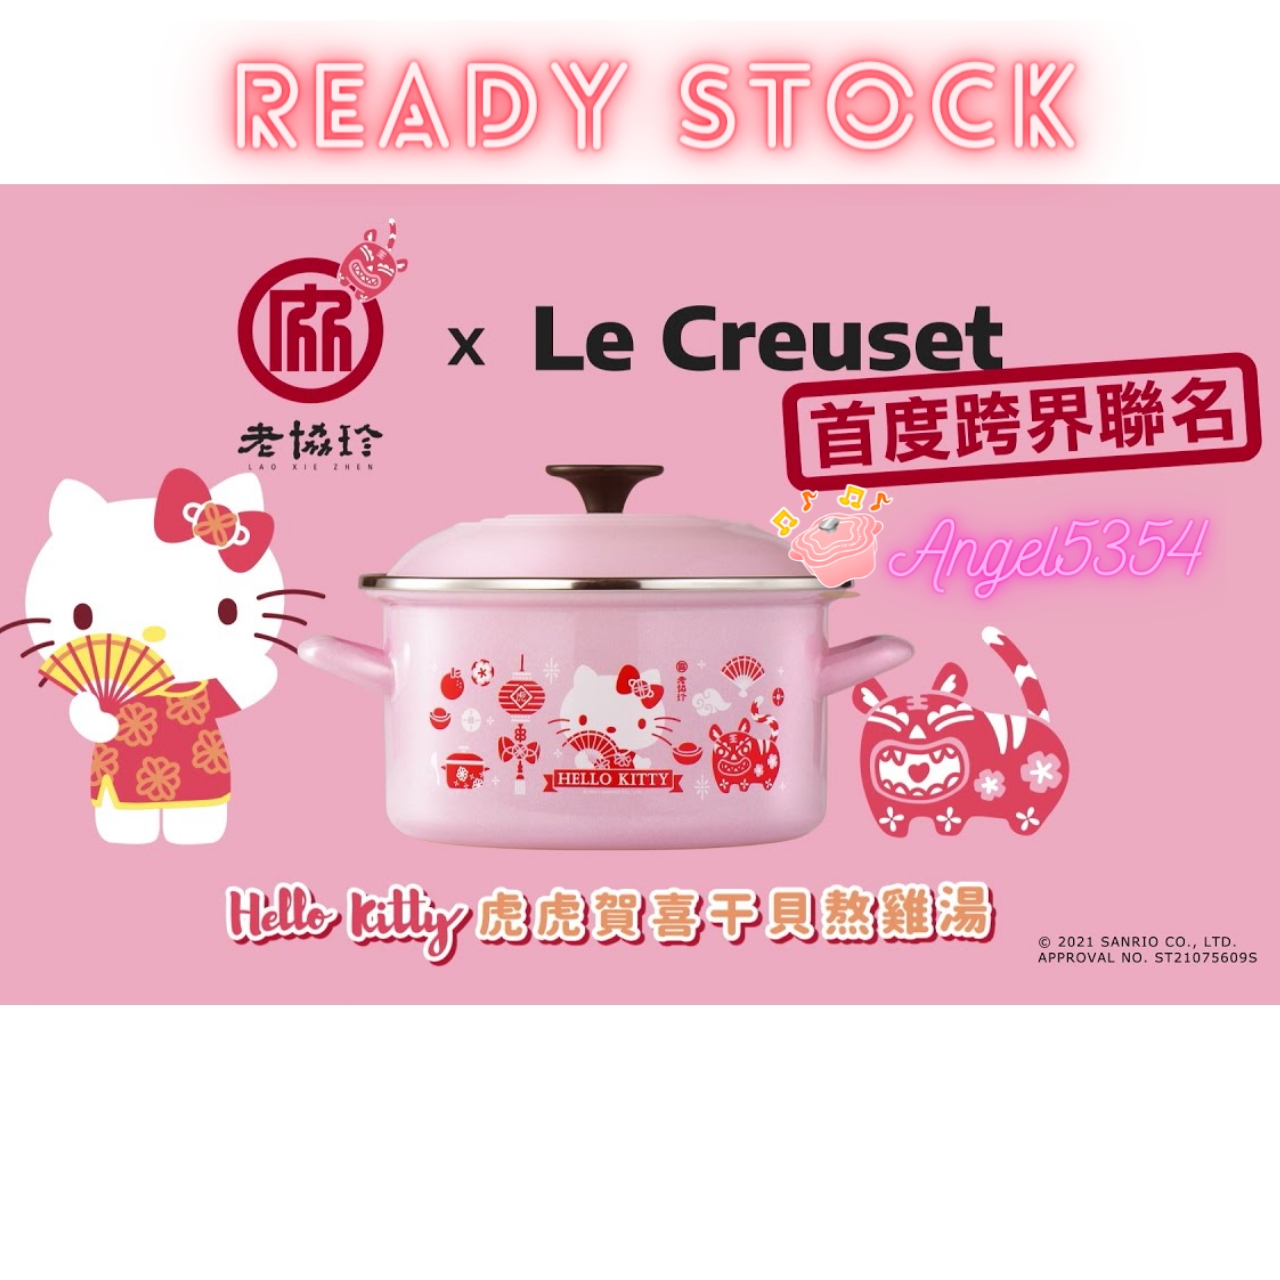 Ready Stock】Lao Xie Zhen Taiwan HELLO KITTY LE CREUSET EOS Stock